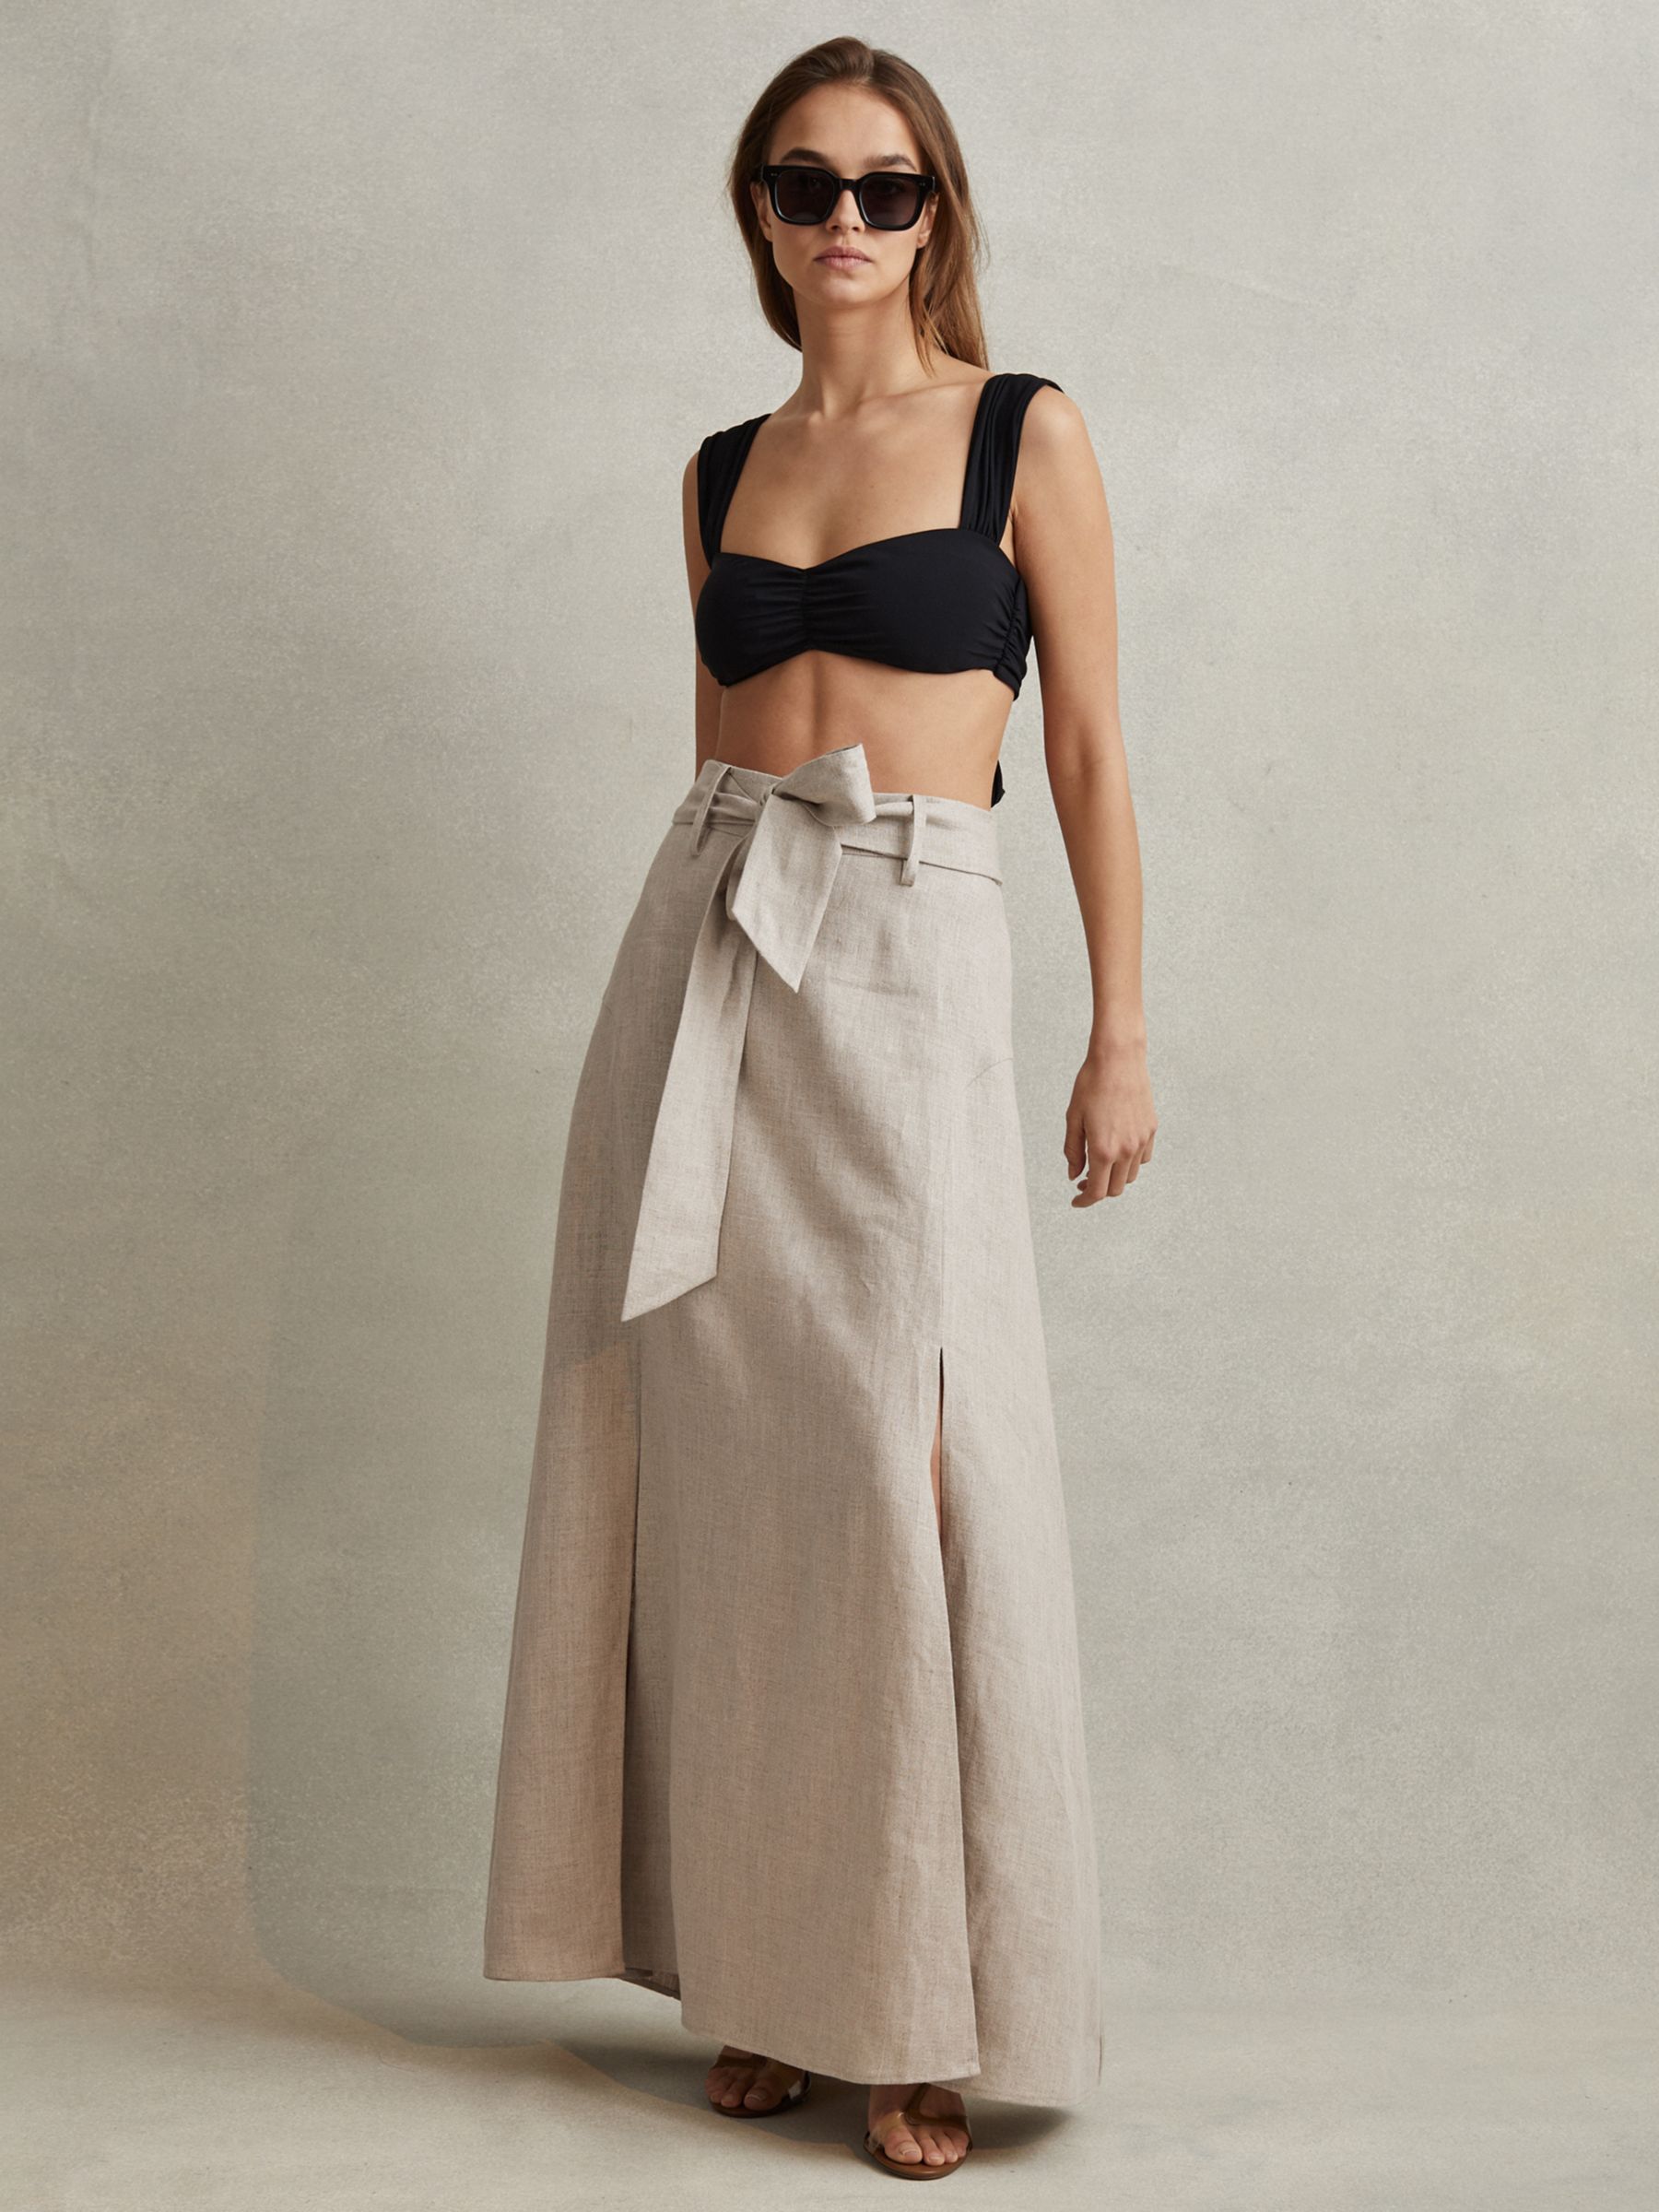 Reiss Abigail Belted Linen Maxi Skirt, Neutral, 6